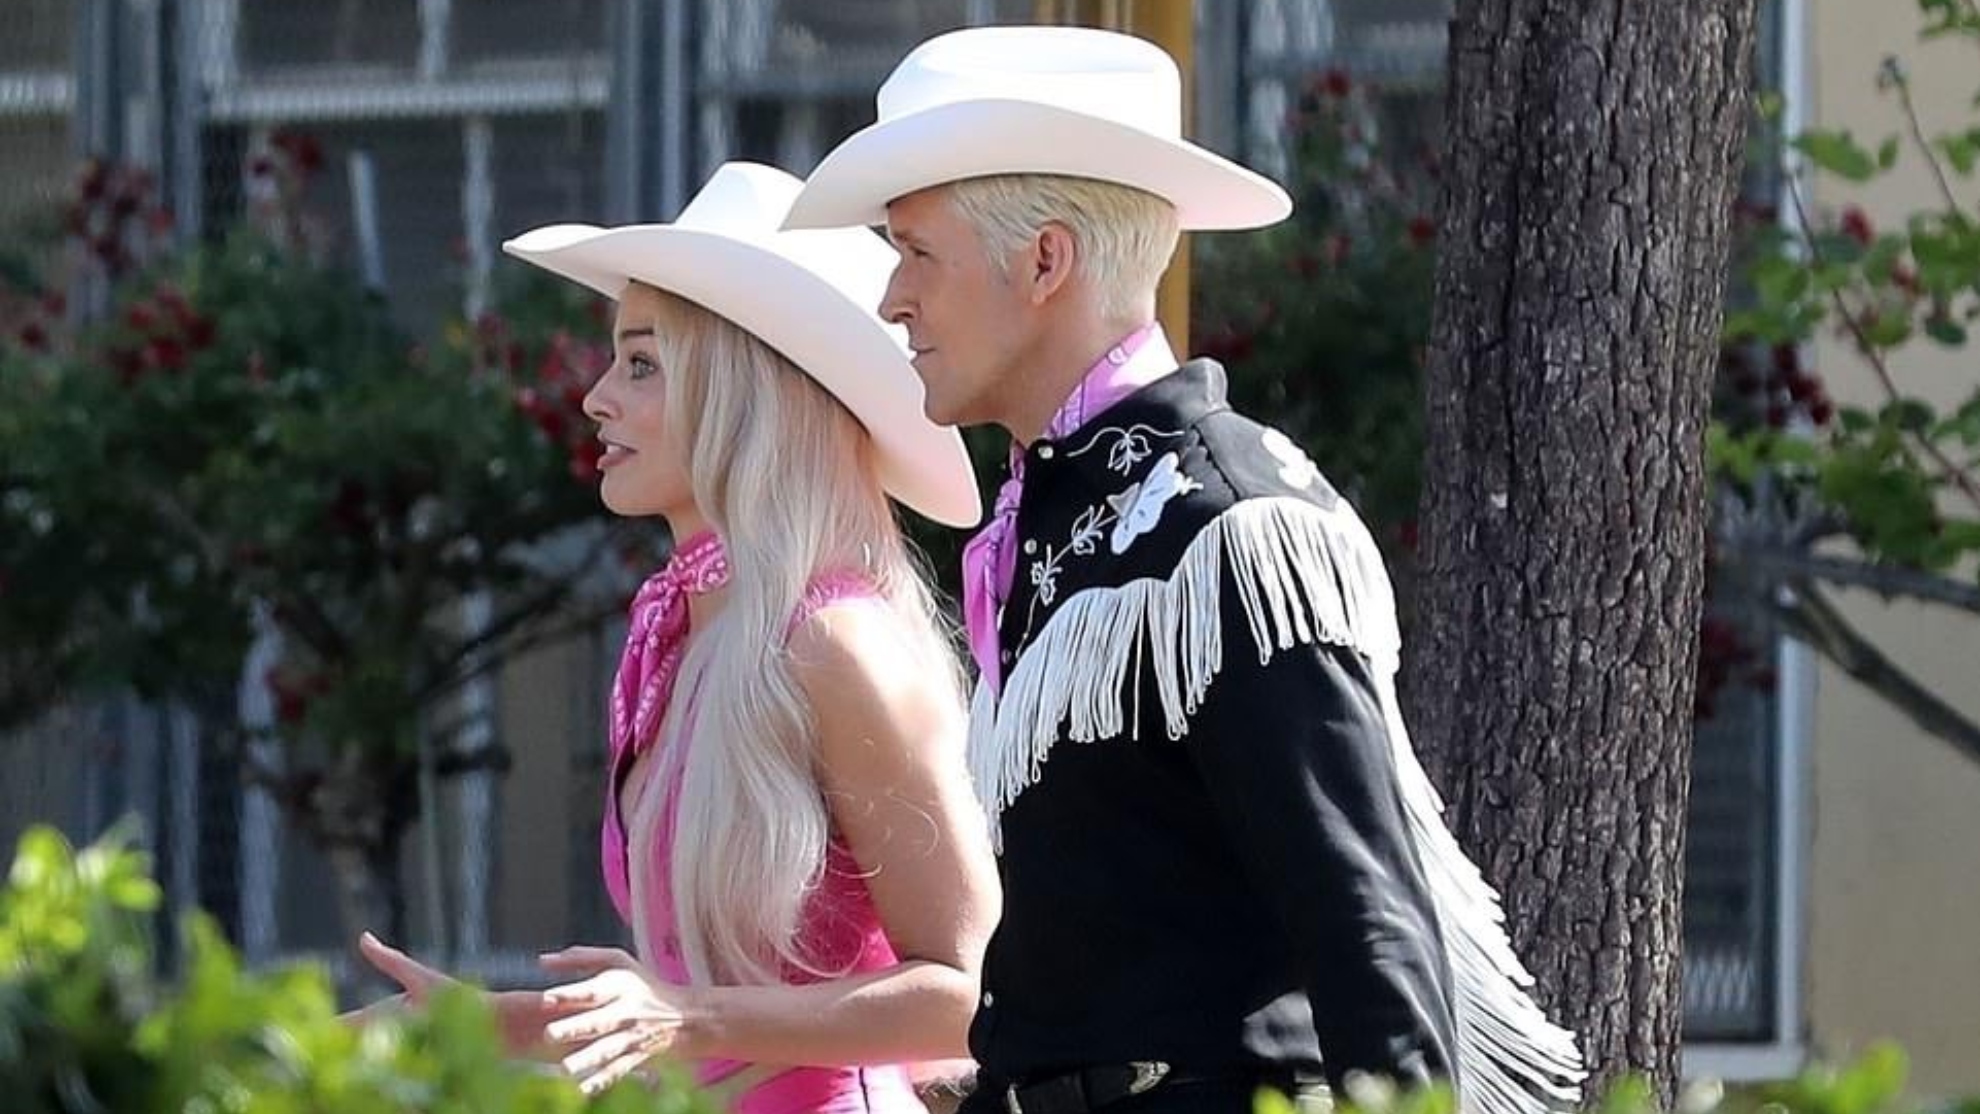 Ryan Gosling set to play Ken in 'Barbie' movie